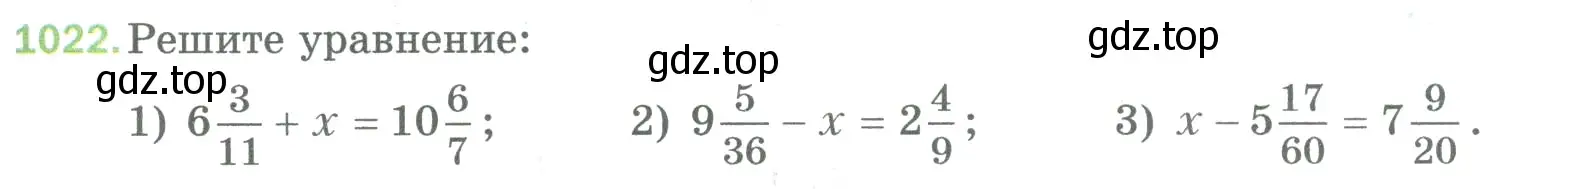 Условие номер 1022 (страница 231) гдз по математике 5 класс Мерзляк, Полонский, учебник